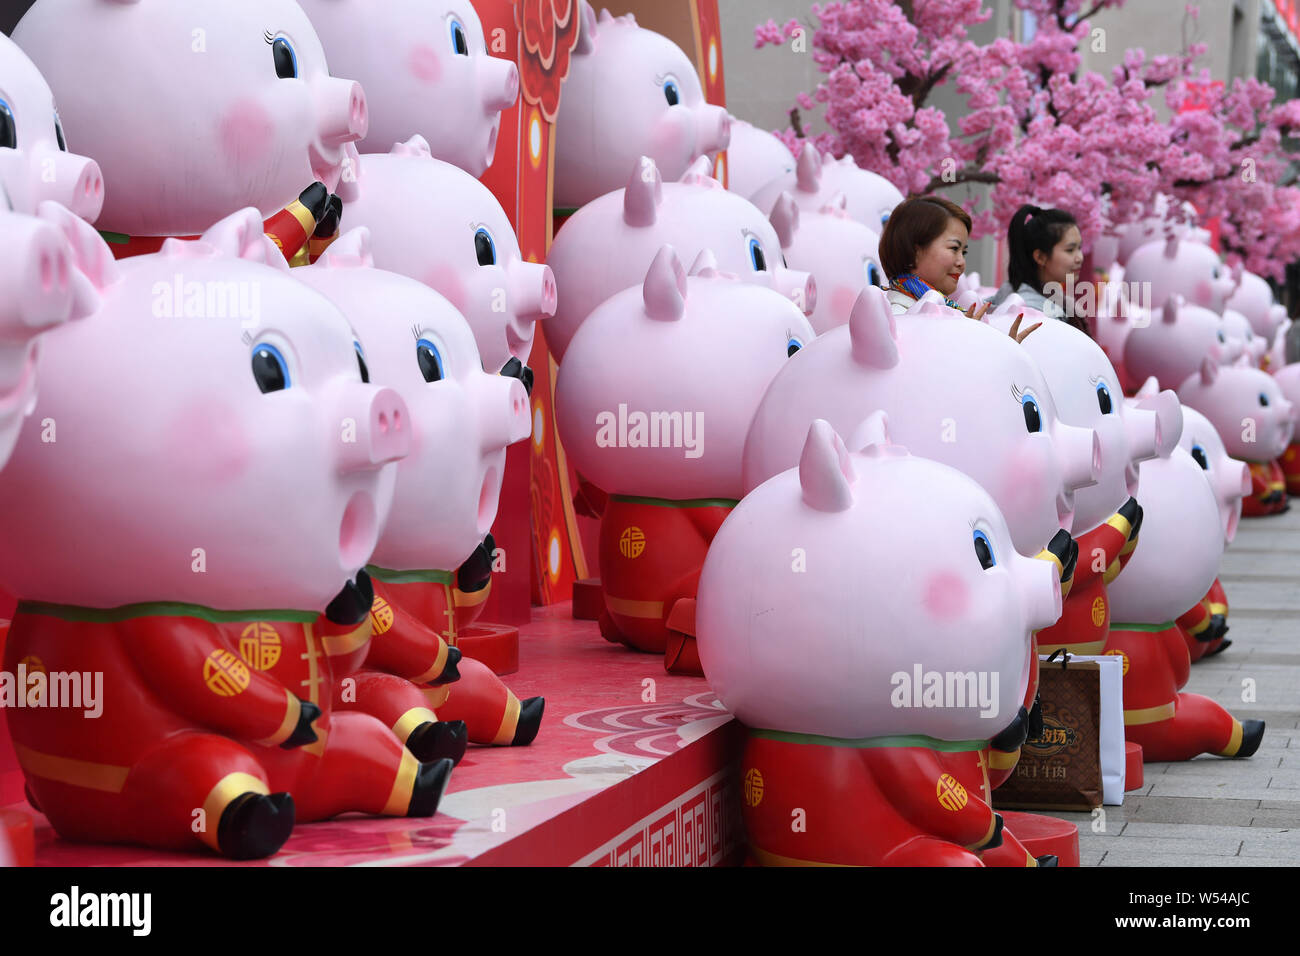 Les citoyens prennent des photos avec des sculptures de porcs pour célébrer la fête du printemps ou le Nouvel An Chinois (année du cochon) sur l'affichage sur une rue à Nanning Banque D'Images